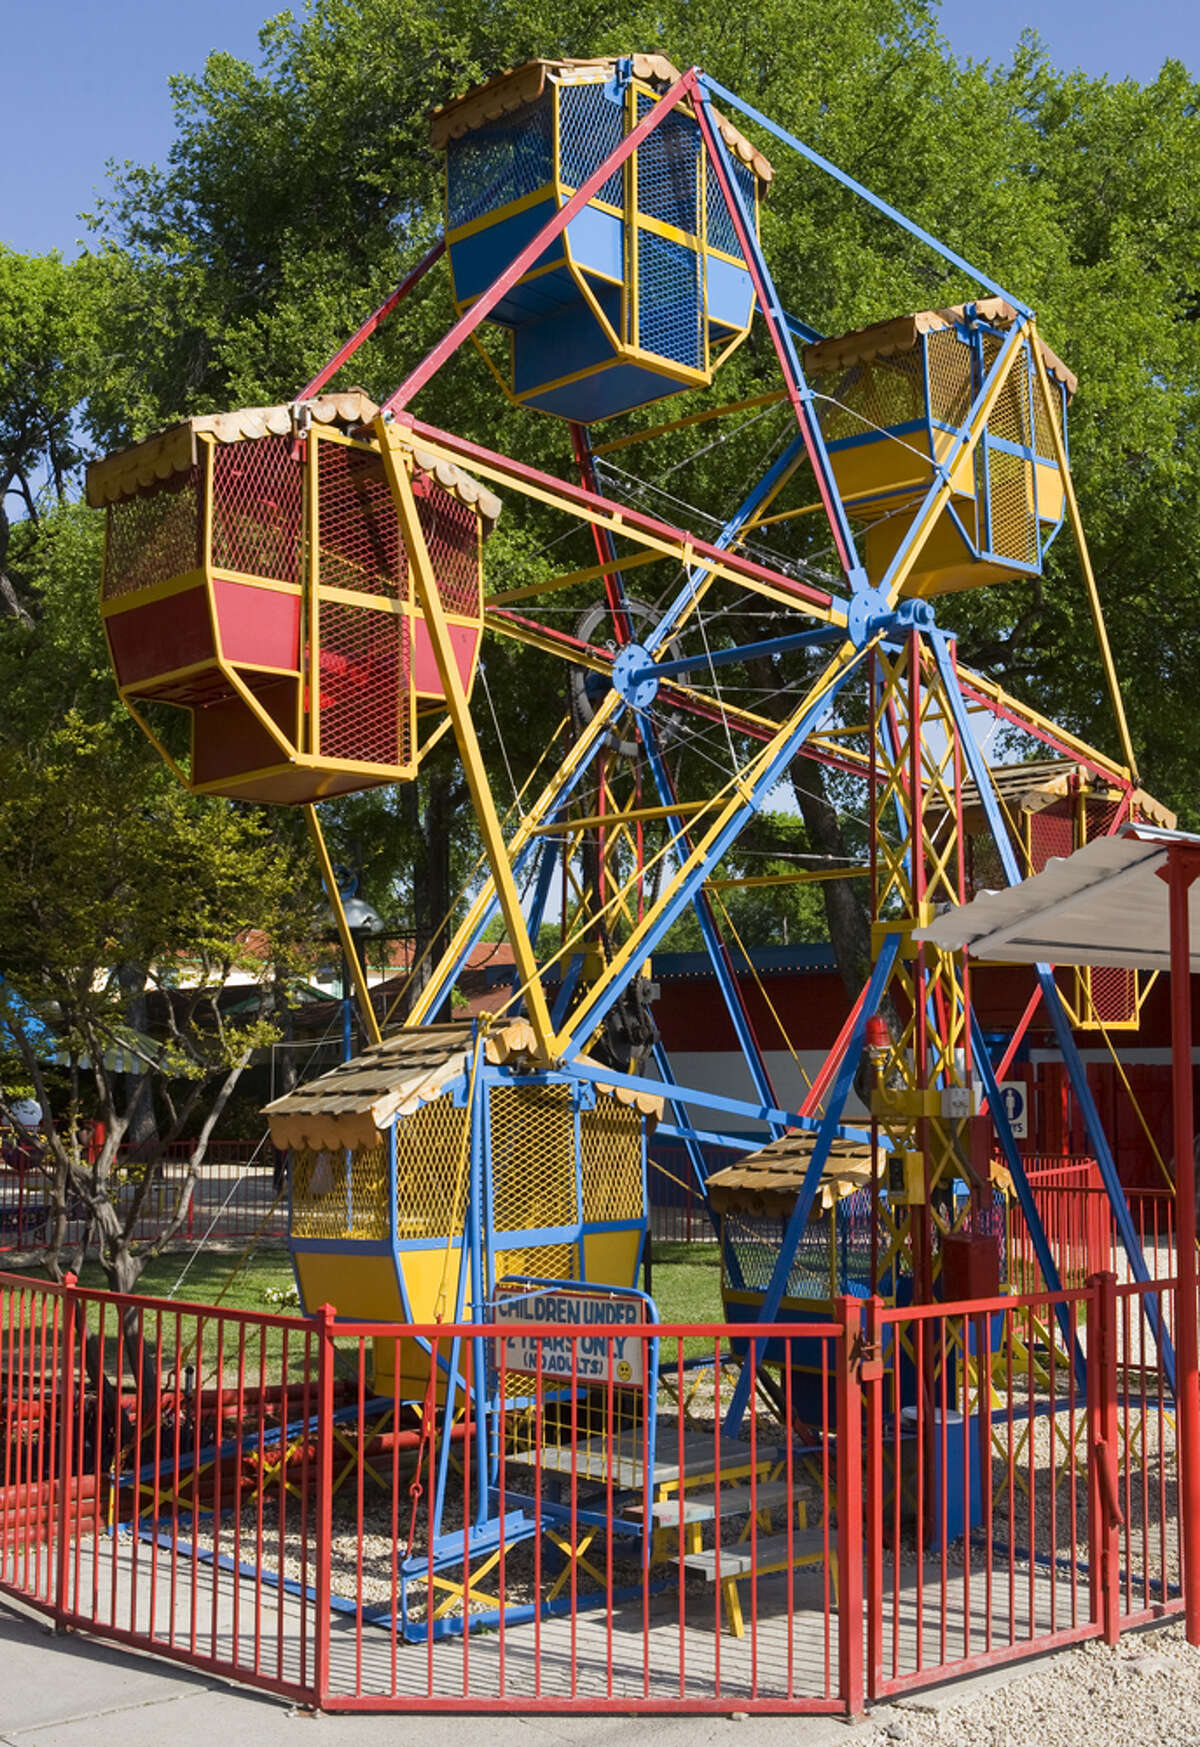 The ferris wheel is a favorite at Kiddie Park.